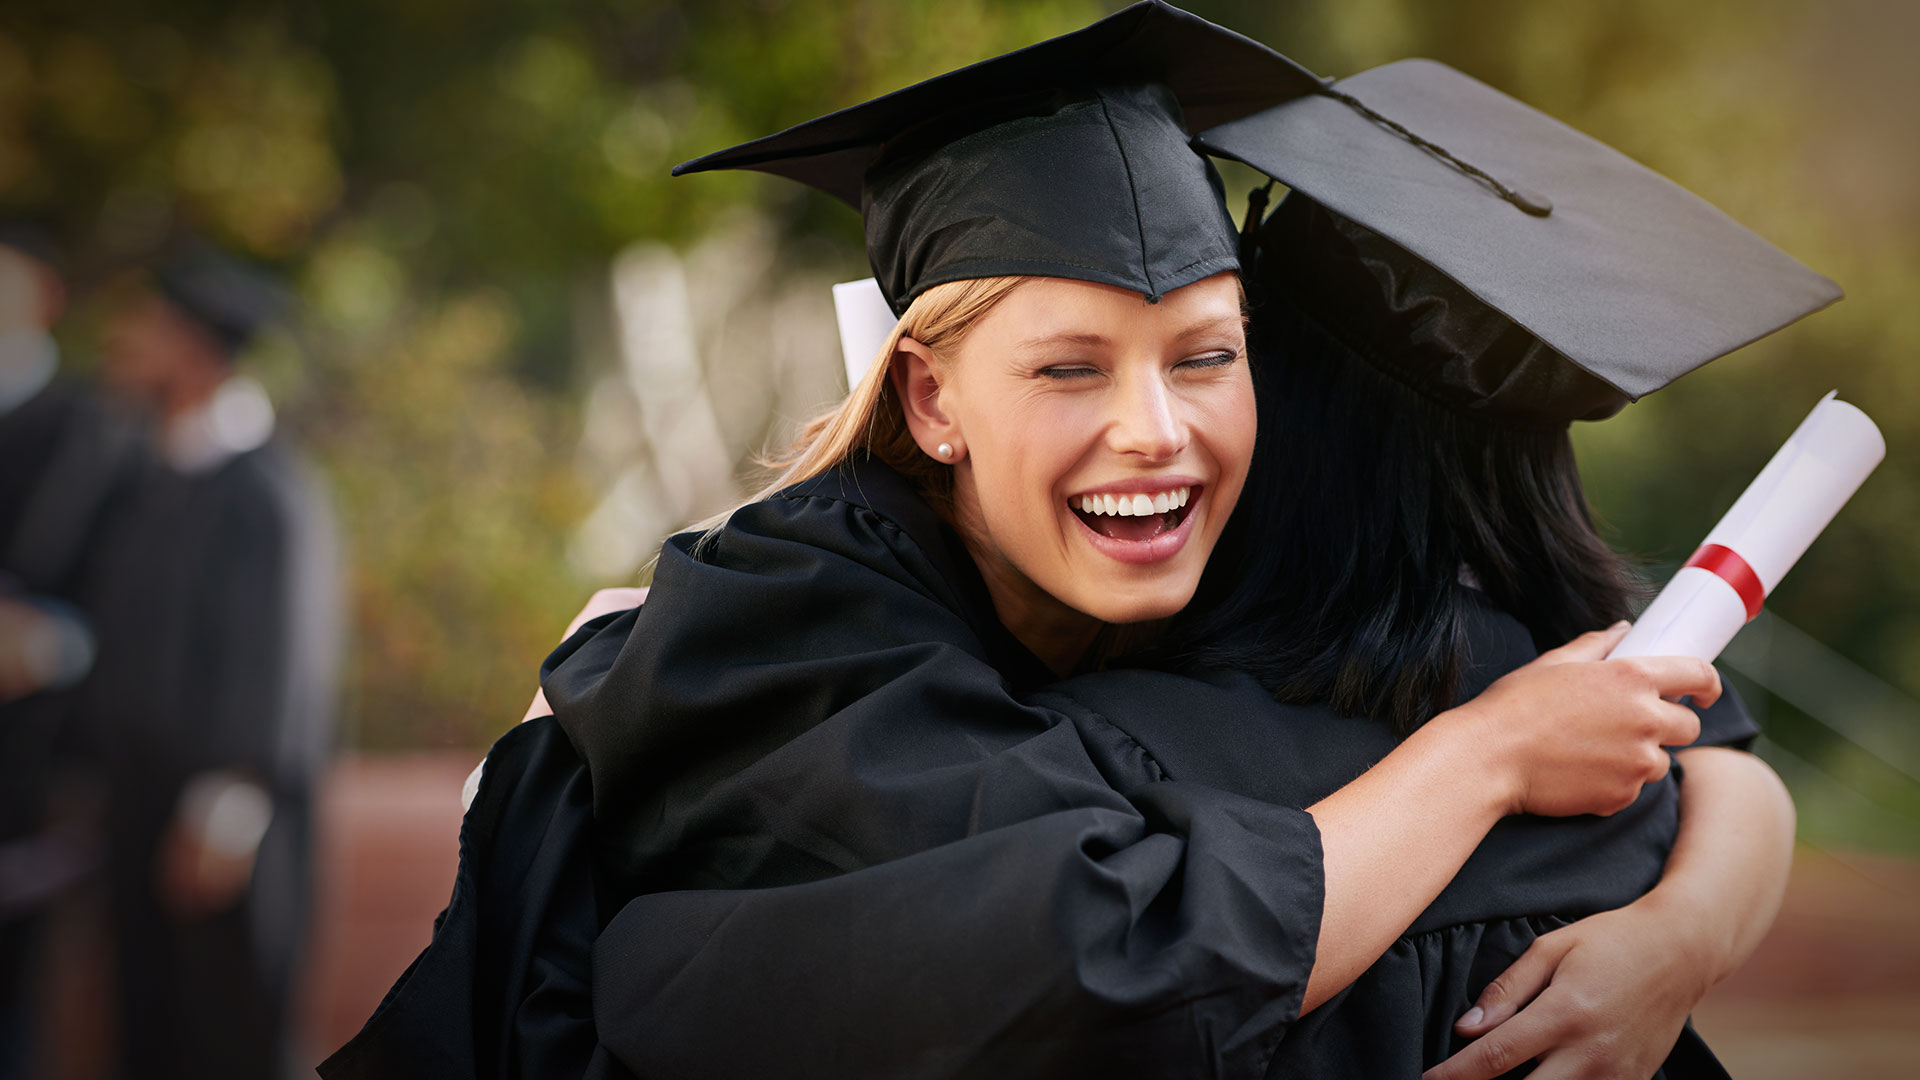 Students hugging at graduation